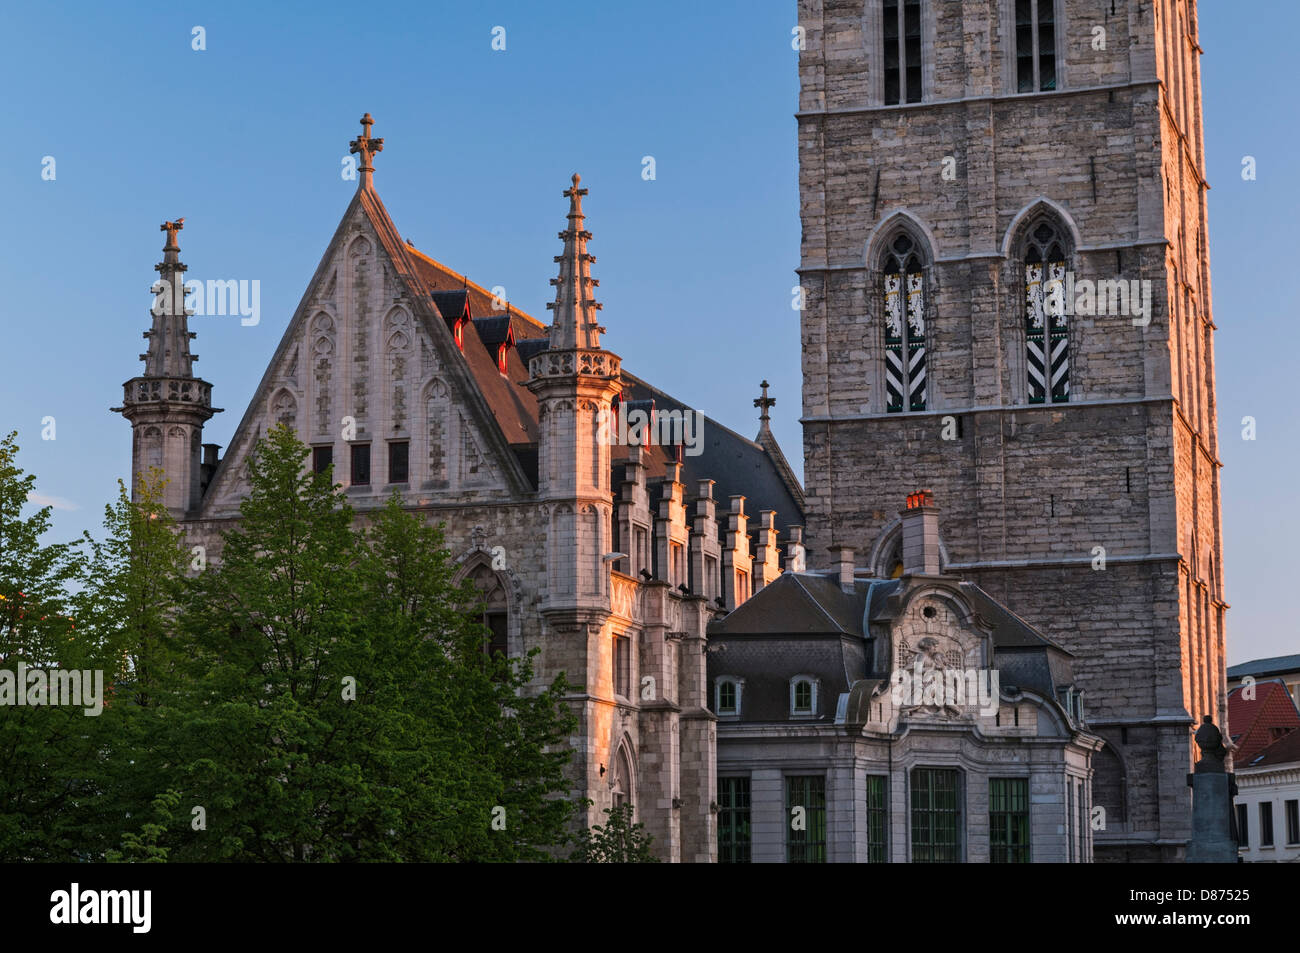 The Belfort belfry Ghent Belgium Stock Photo